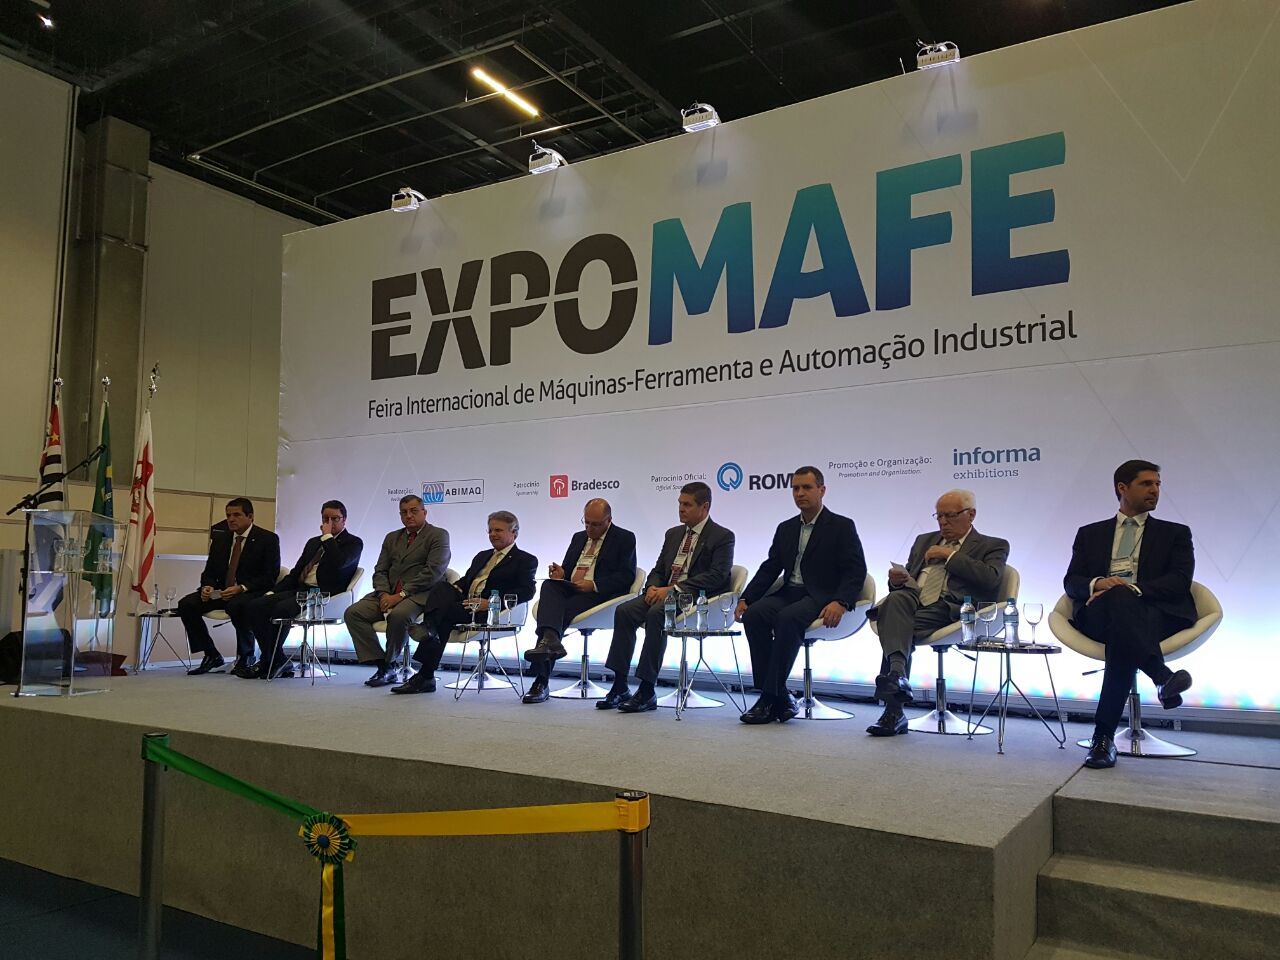 EXPOMAFE 2019 – Feira Internacional de Máquinas-Ferramenta e Automação Industrial